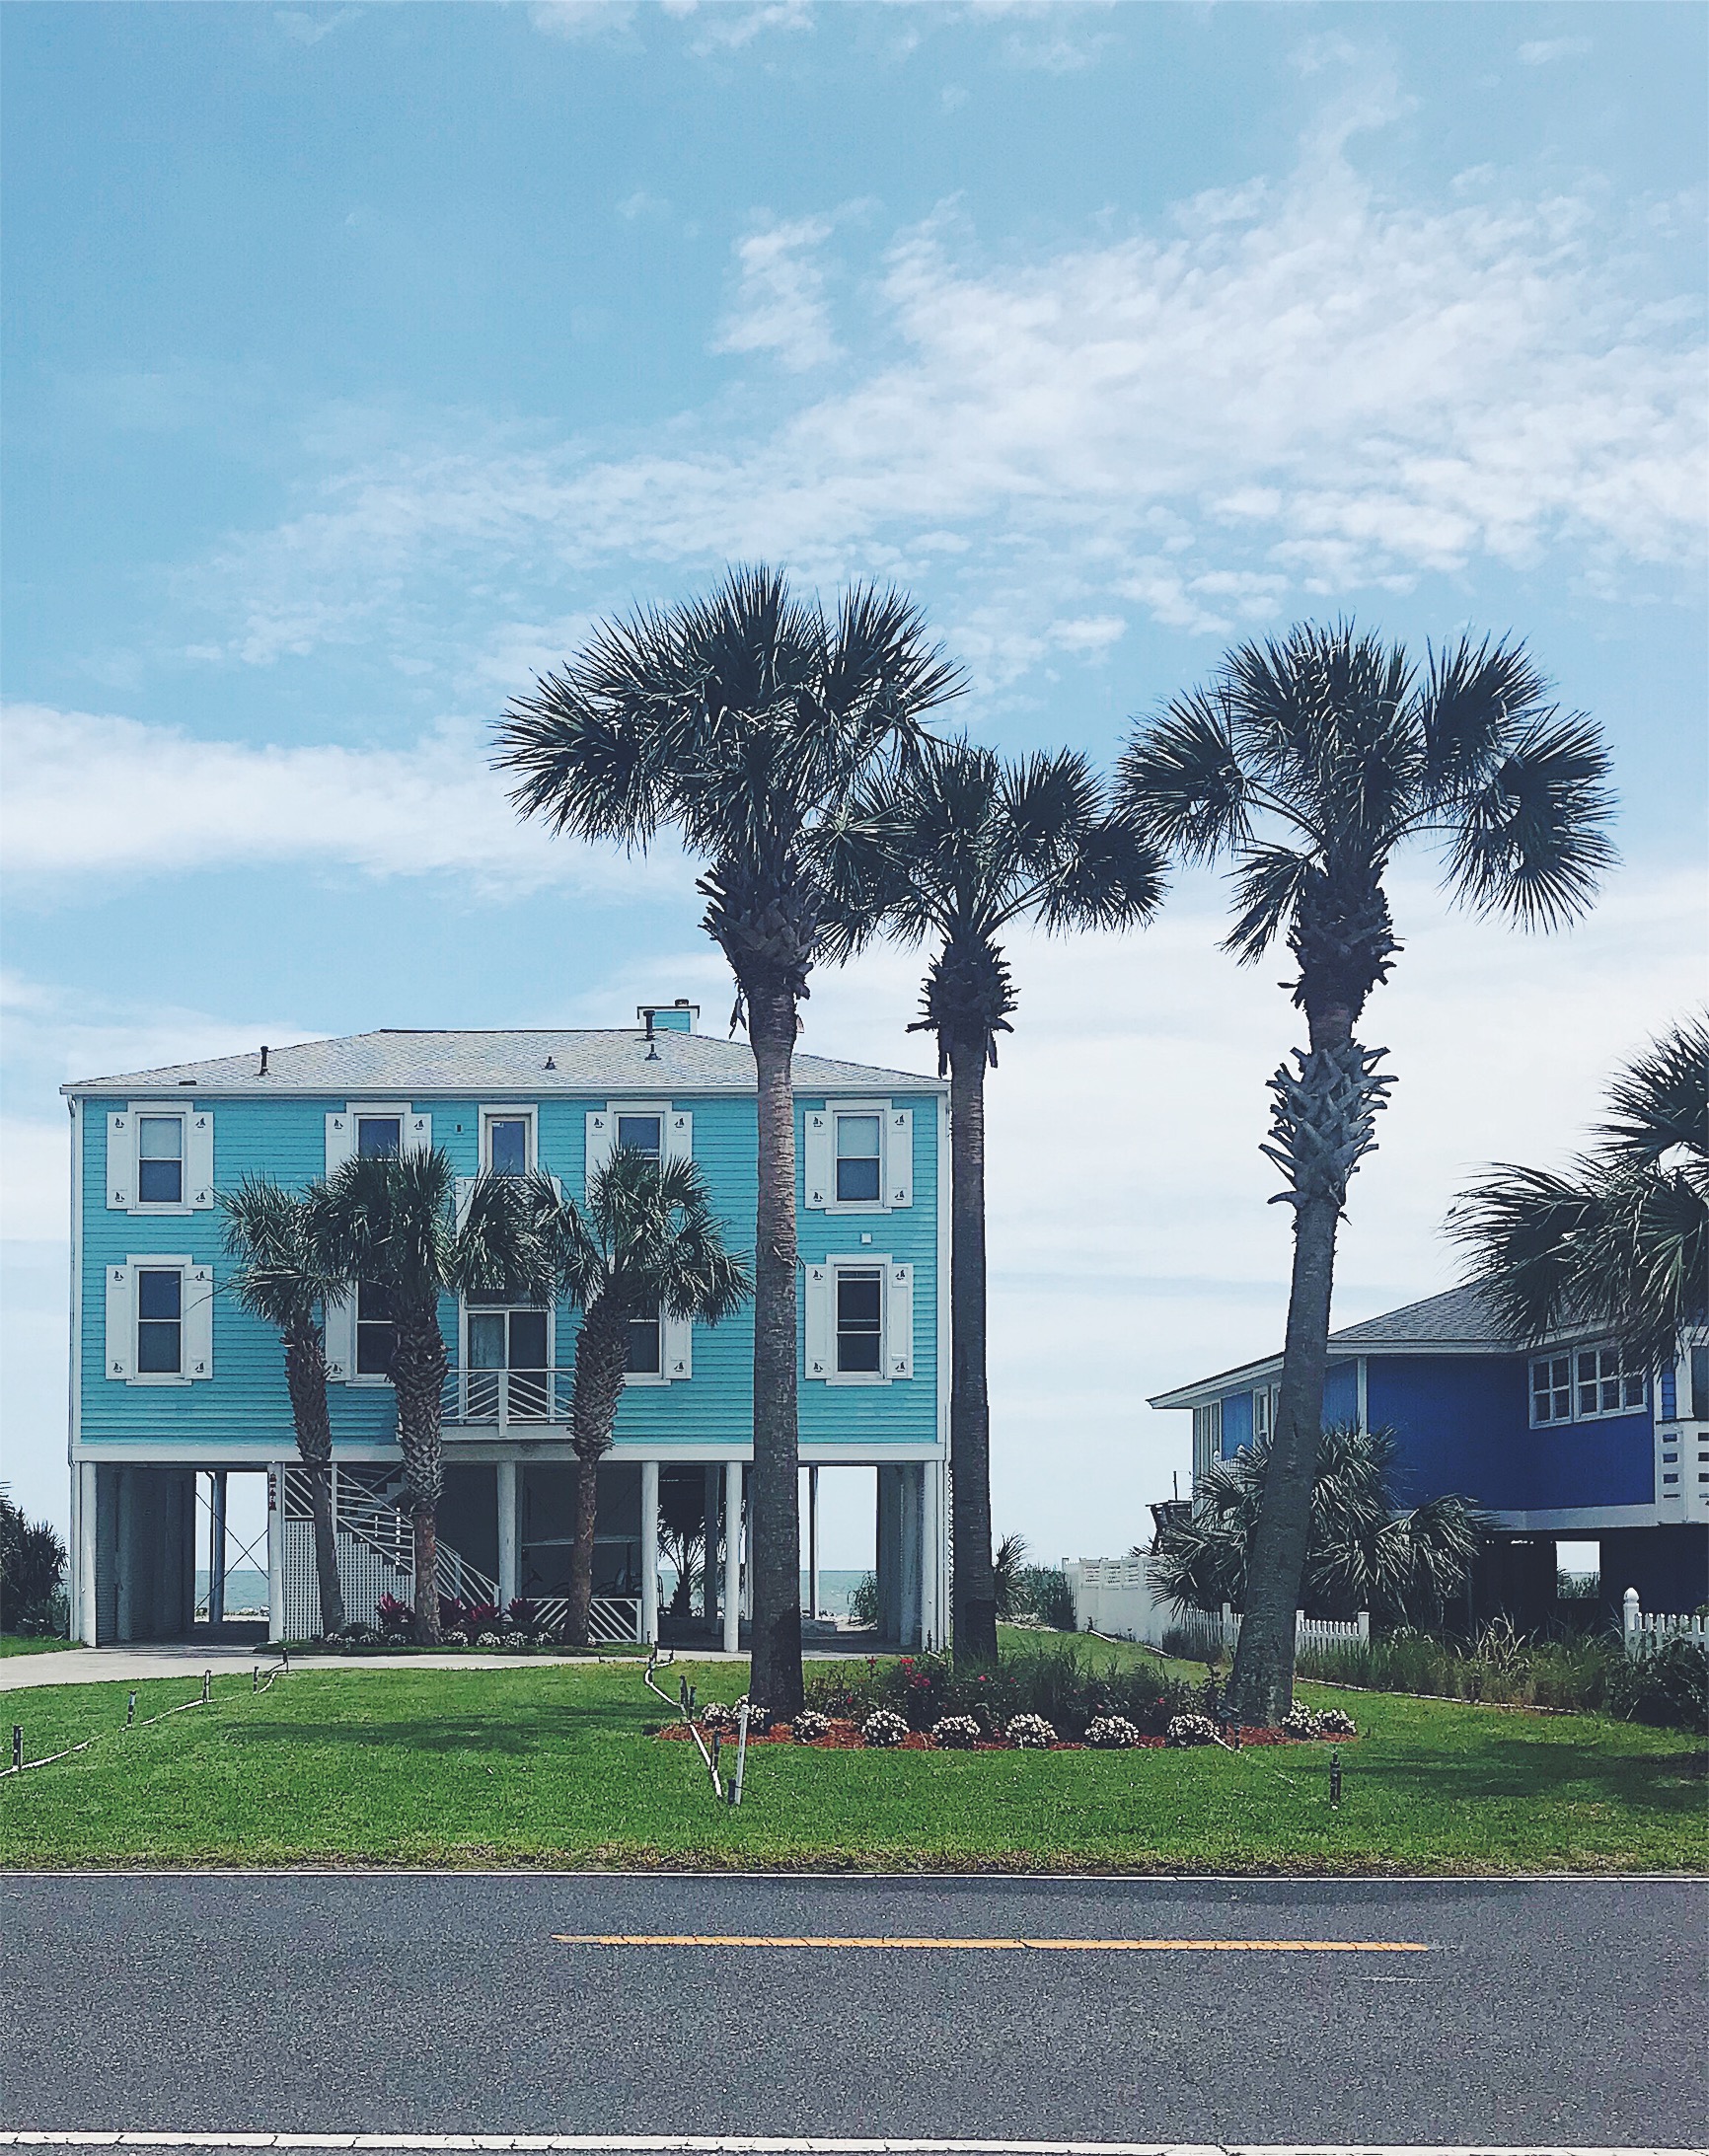 Blue beach house on piers 